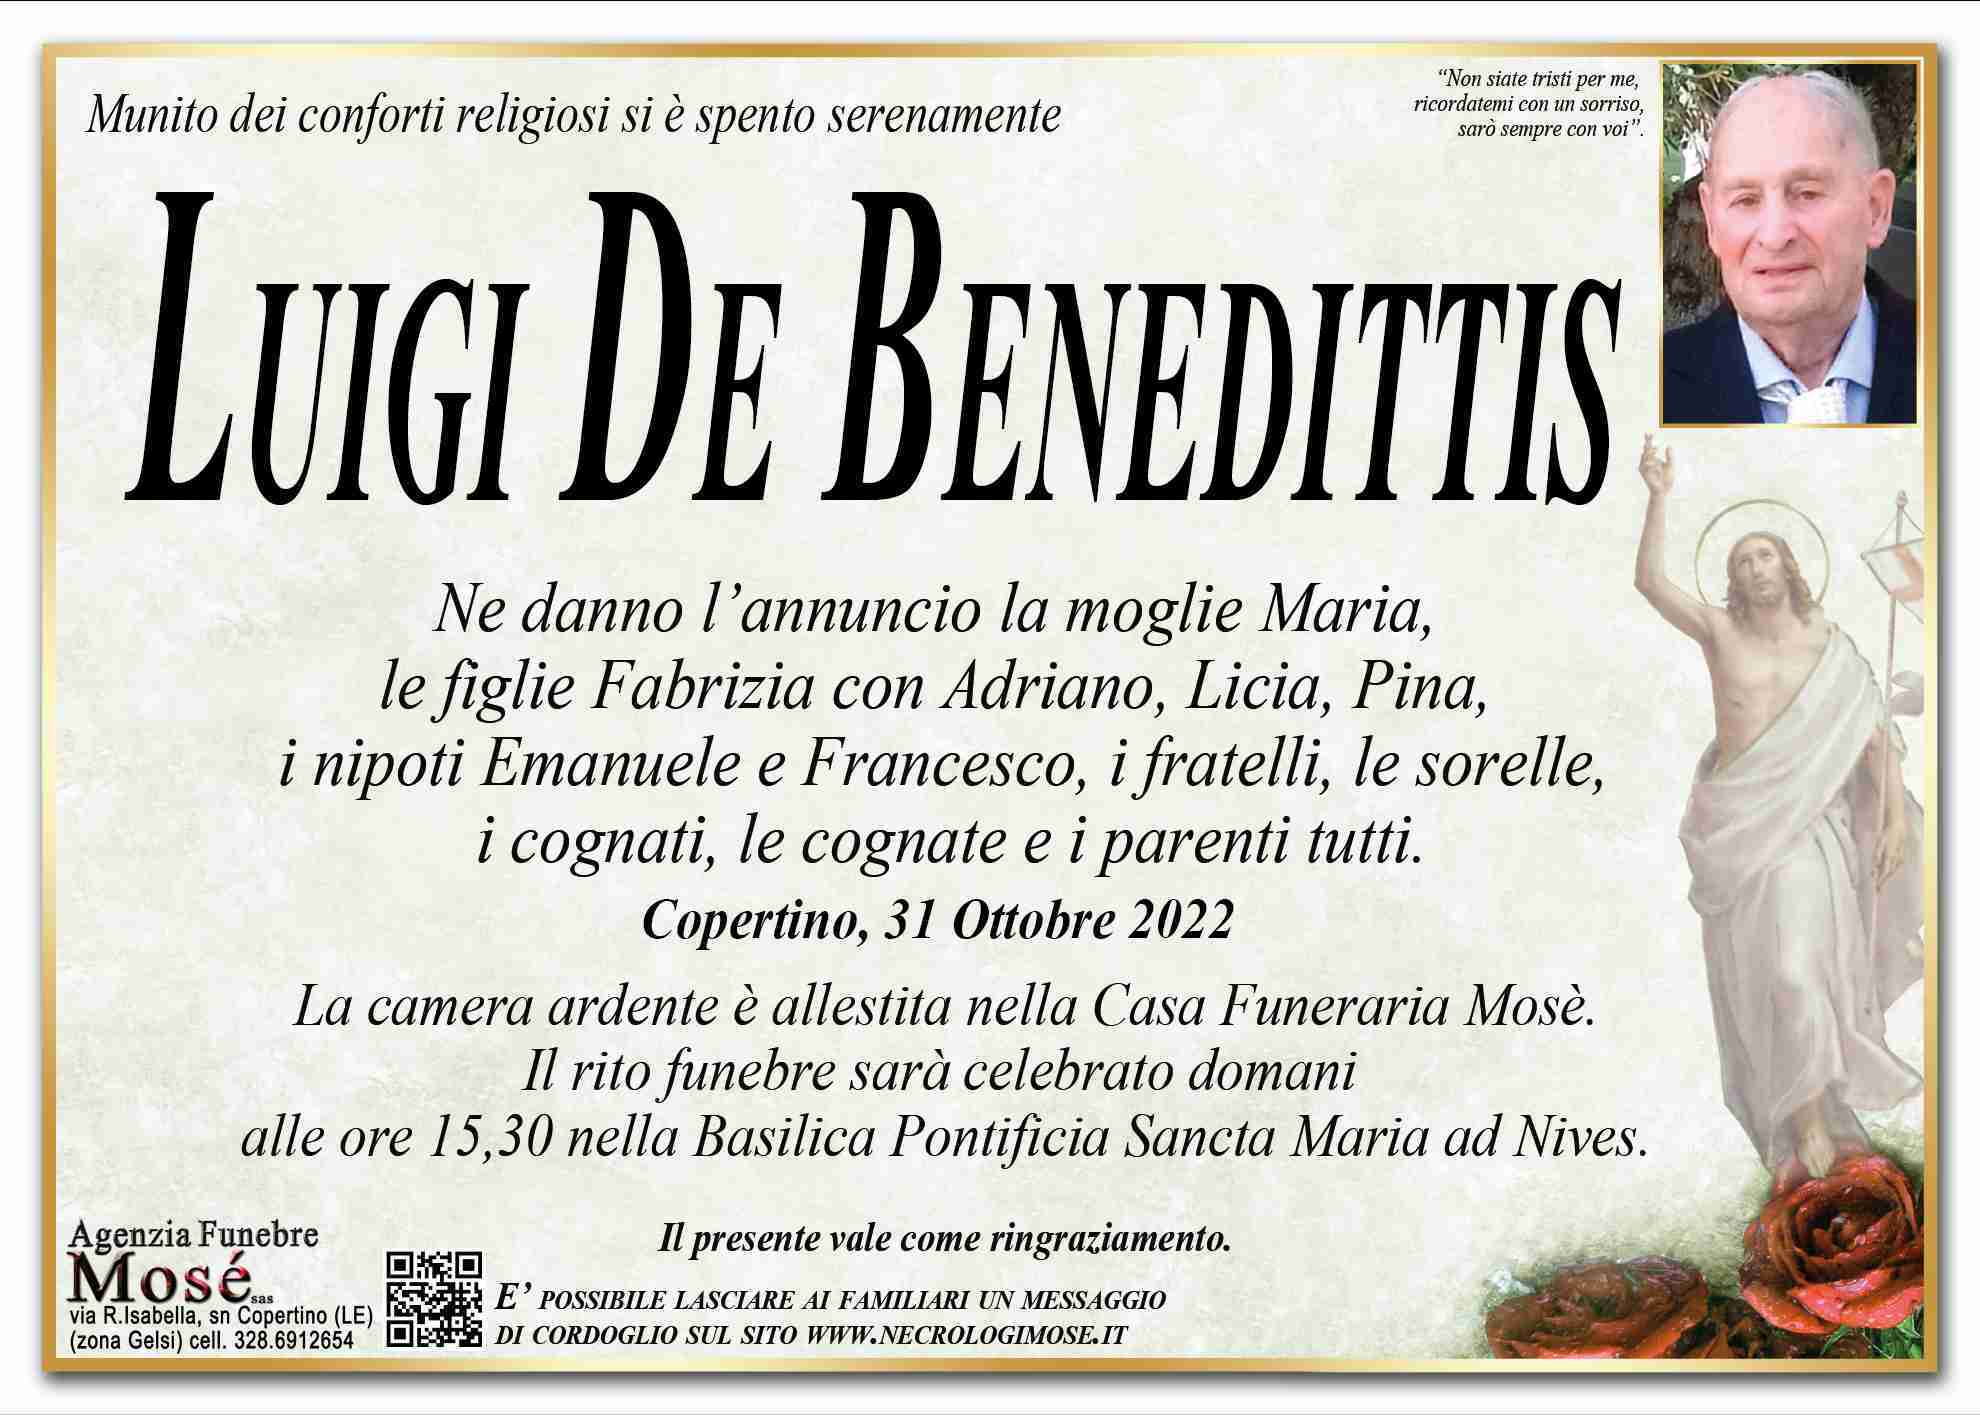 Luigi De Benedittis